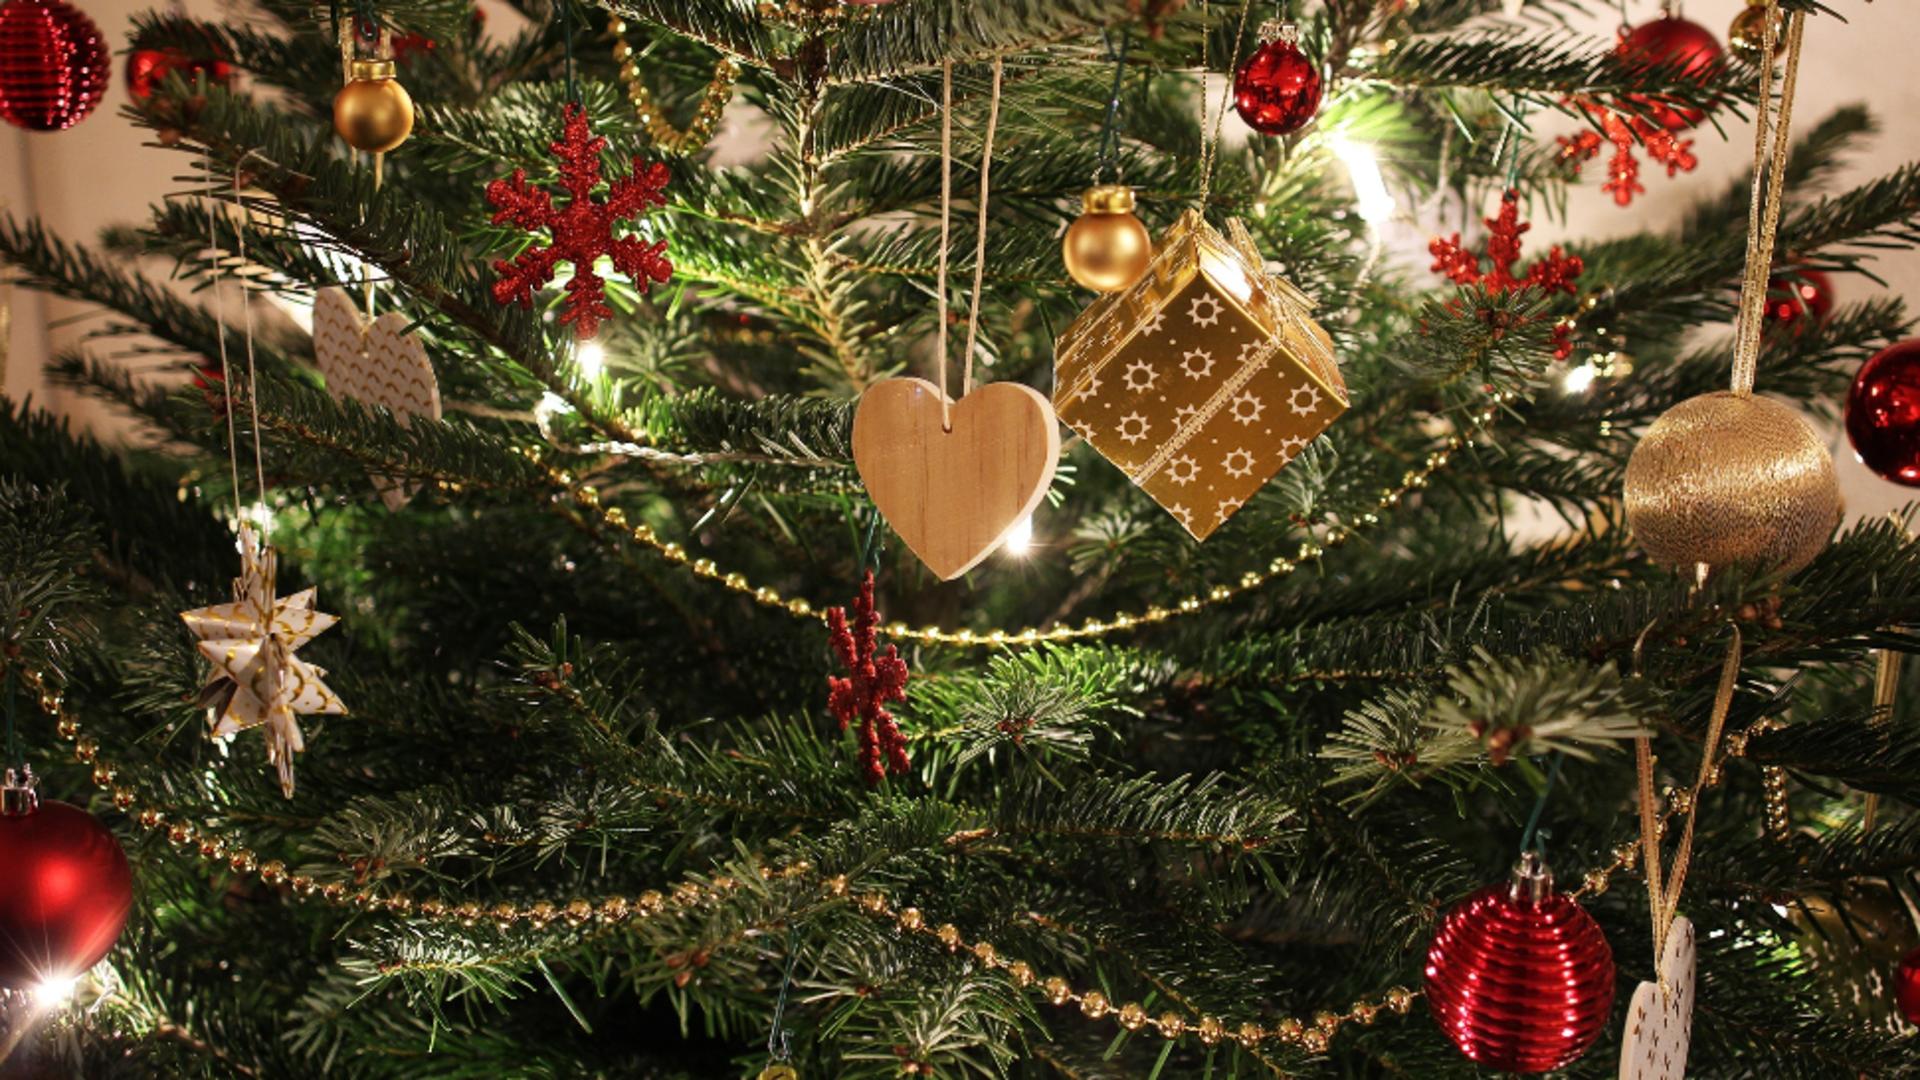 Pericolul ascuns în decorațiile de Crăciun: Cum ne pot pune ornamentele festive sănătatea în pericol